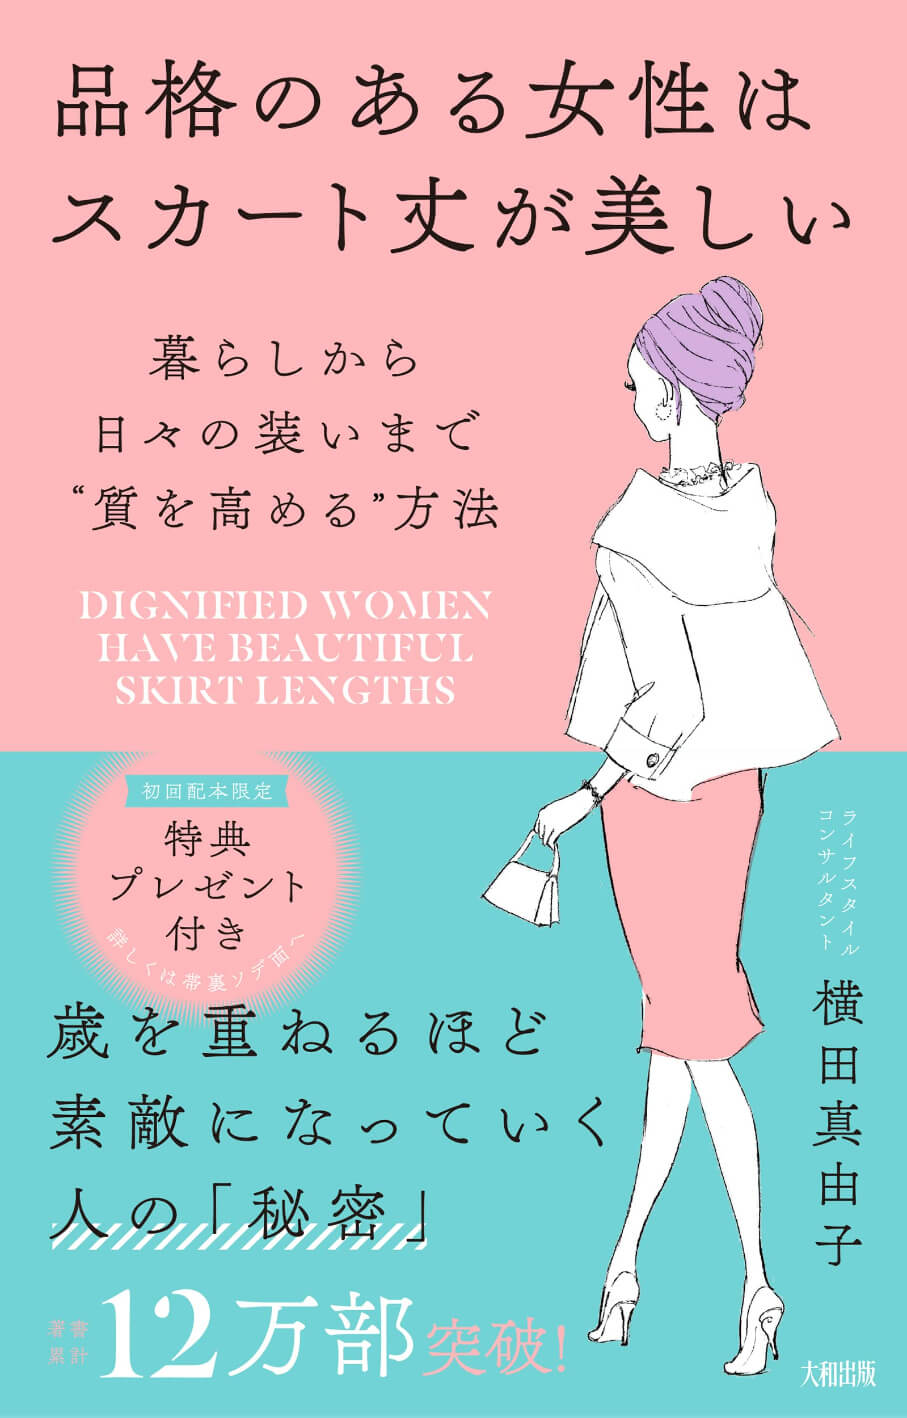 横田真由子の書籍「品格のある女性はスカート丈が美しい: 暮らしから日々の装いまで“質を高める”方法」